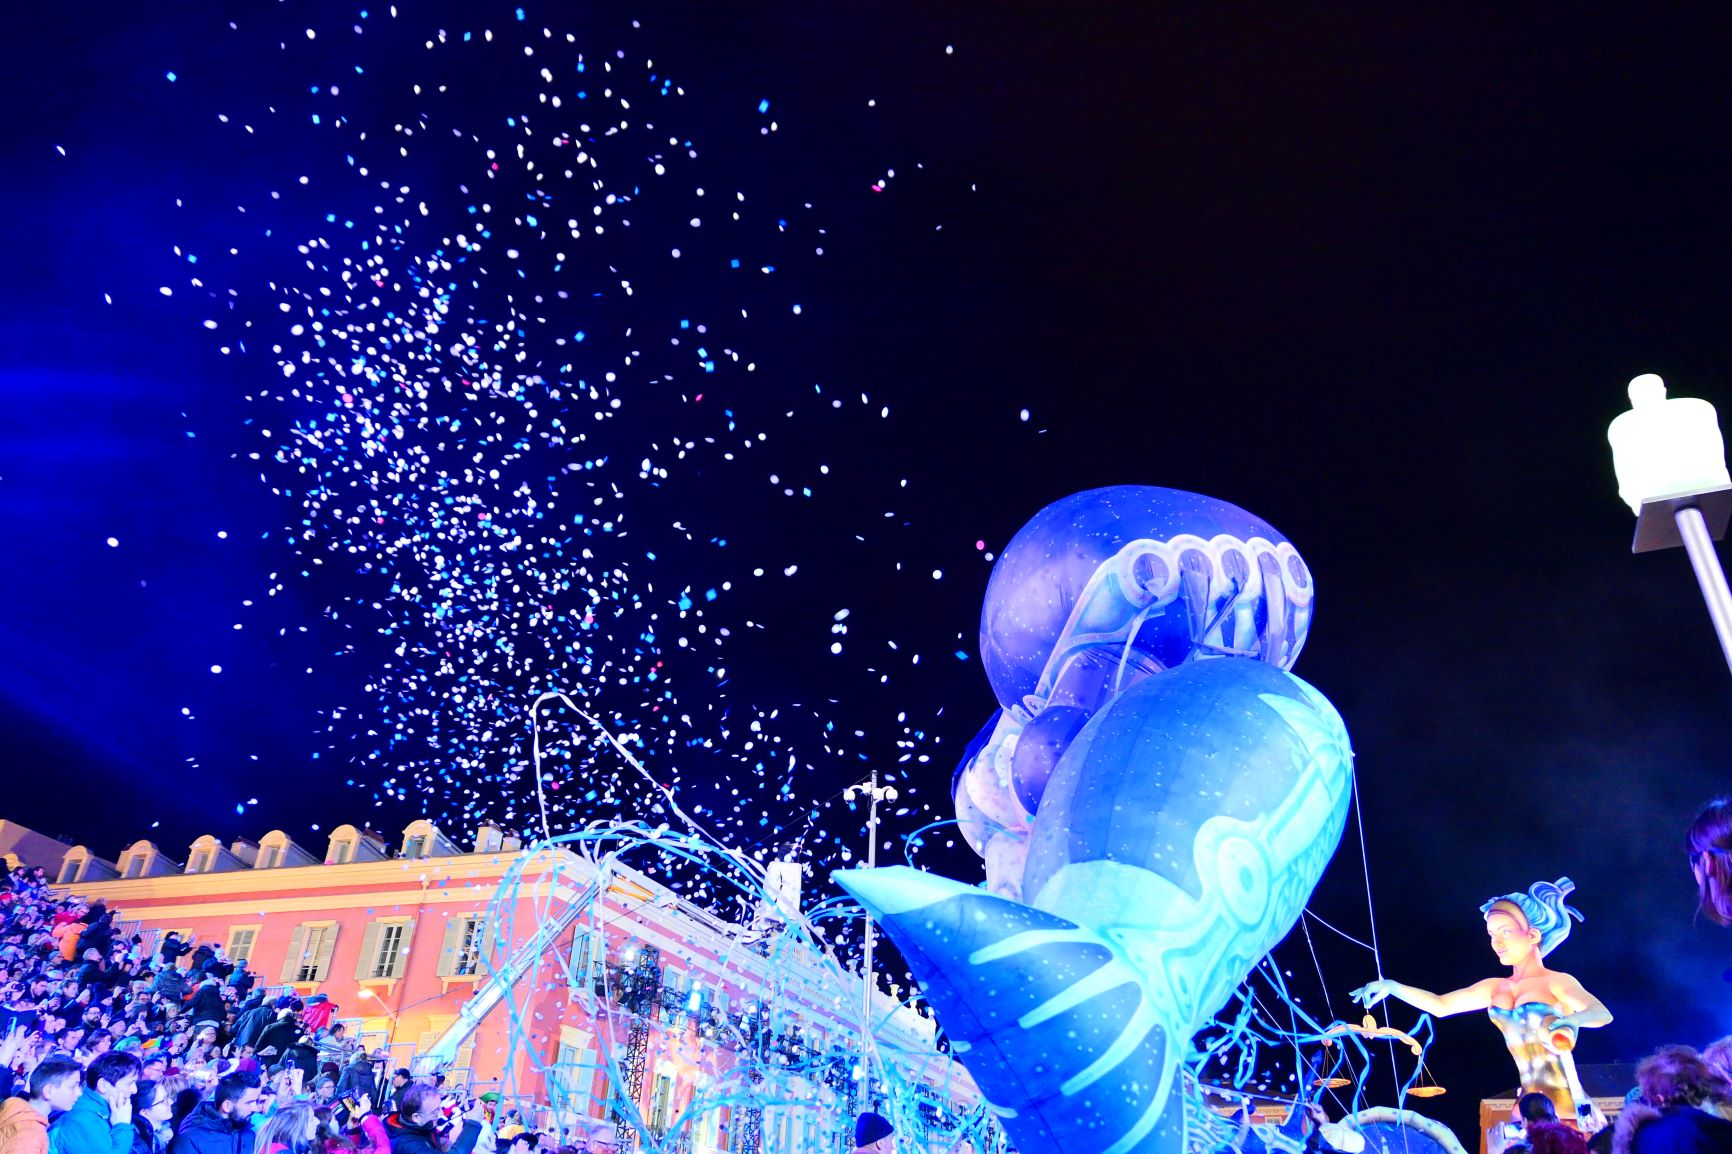 Nacht Korso Karneval in Nizza